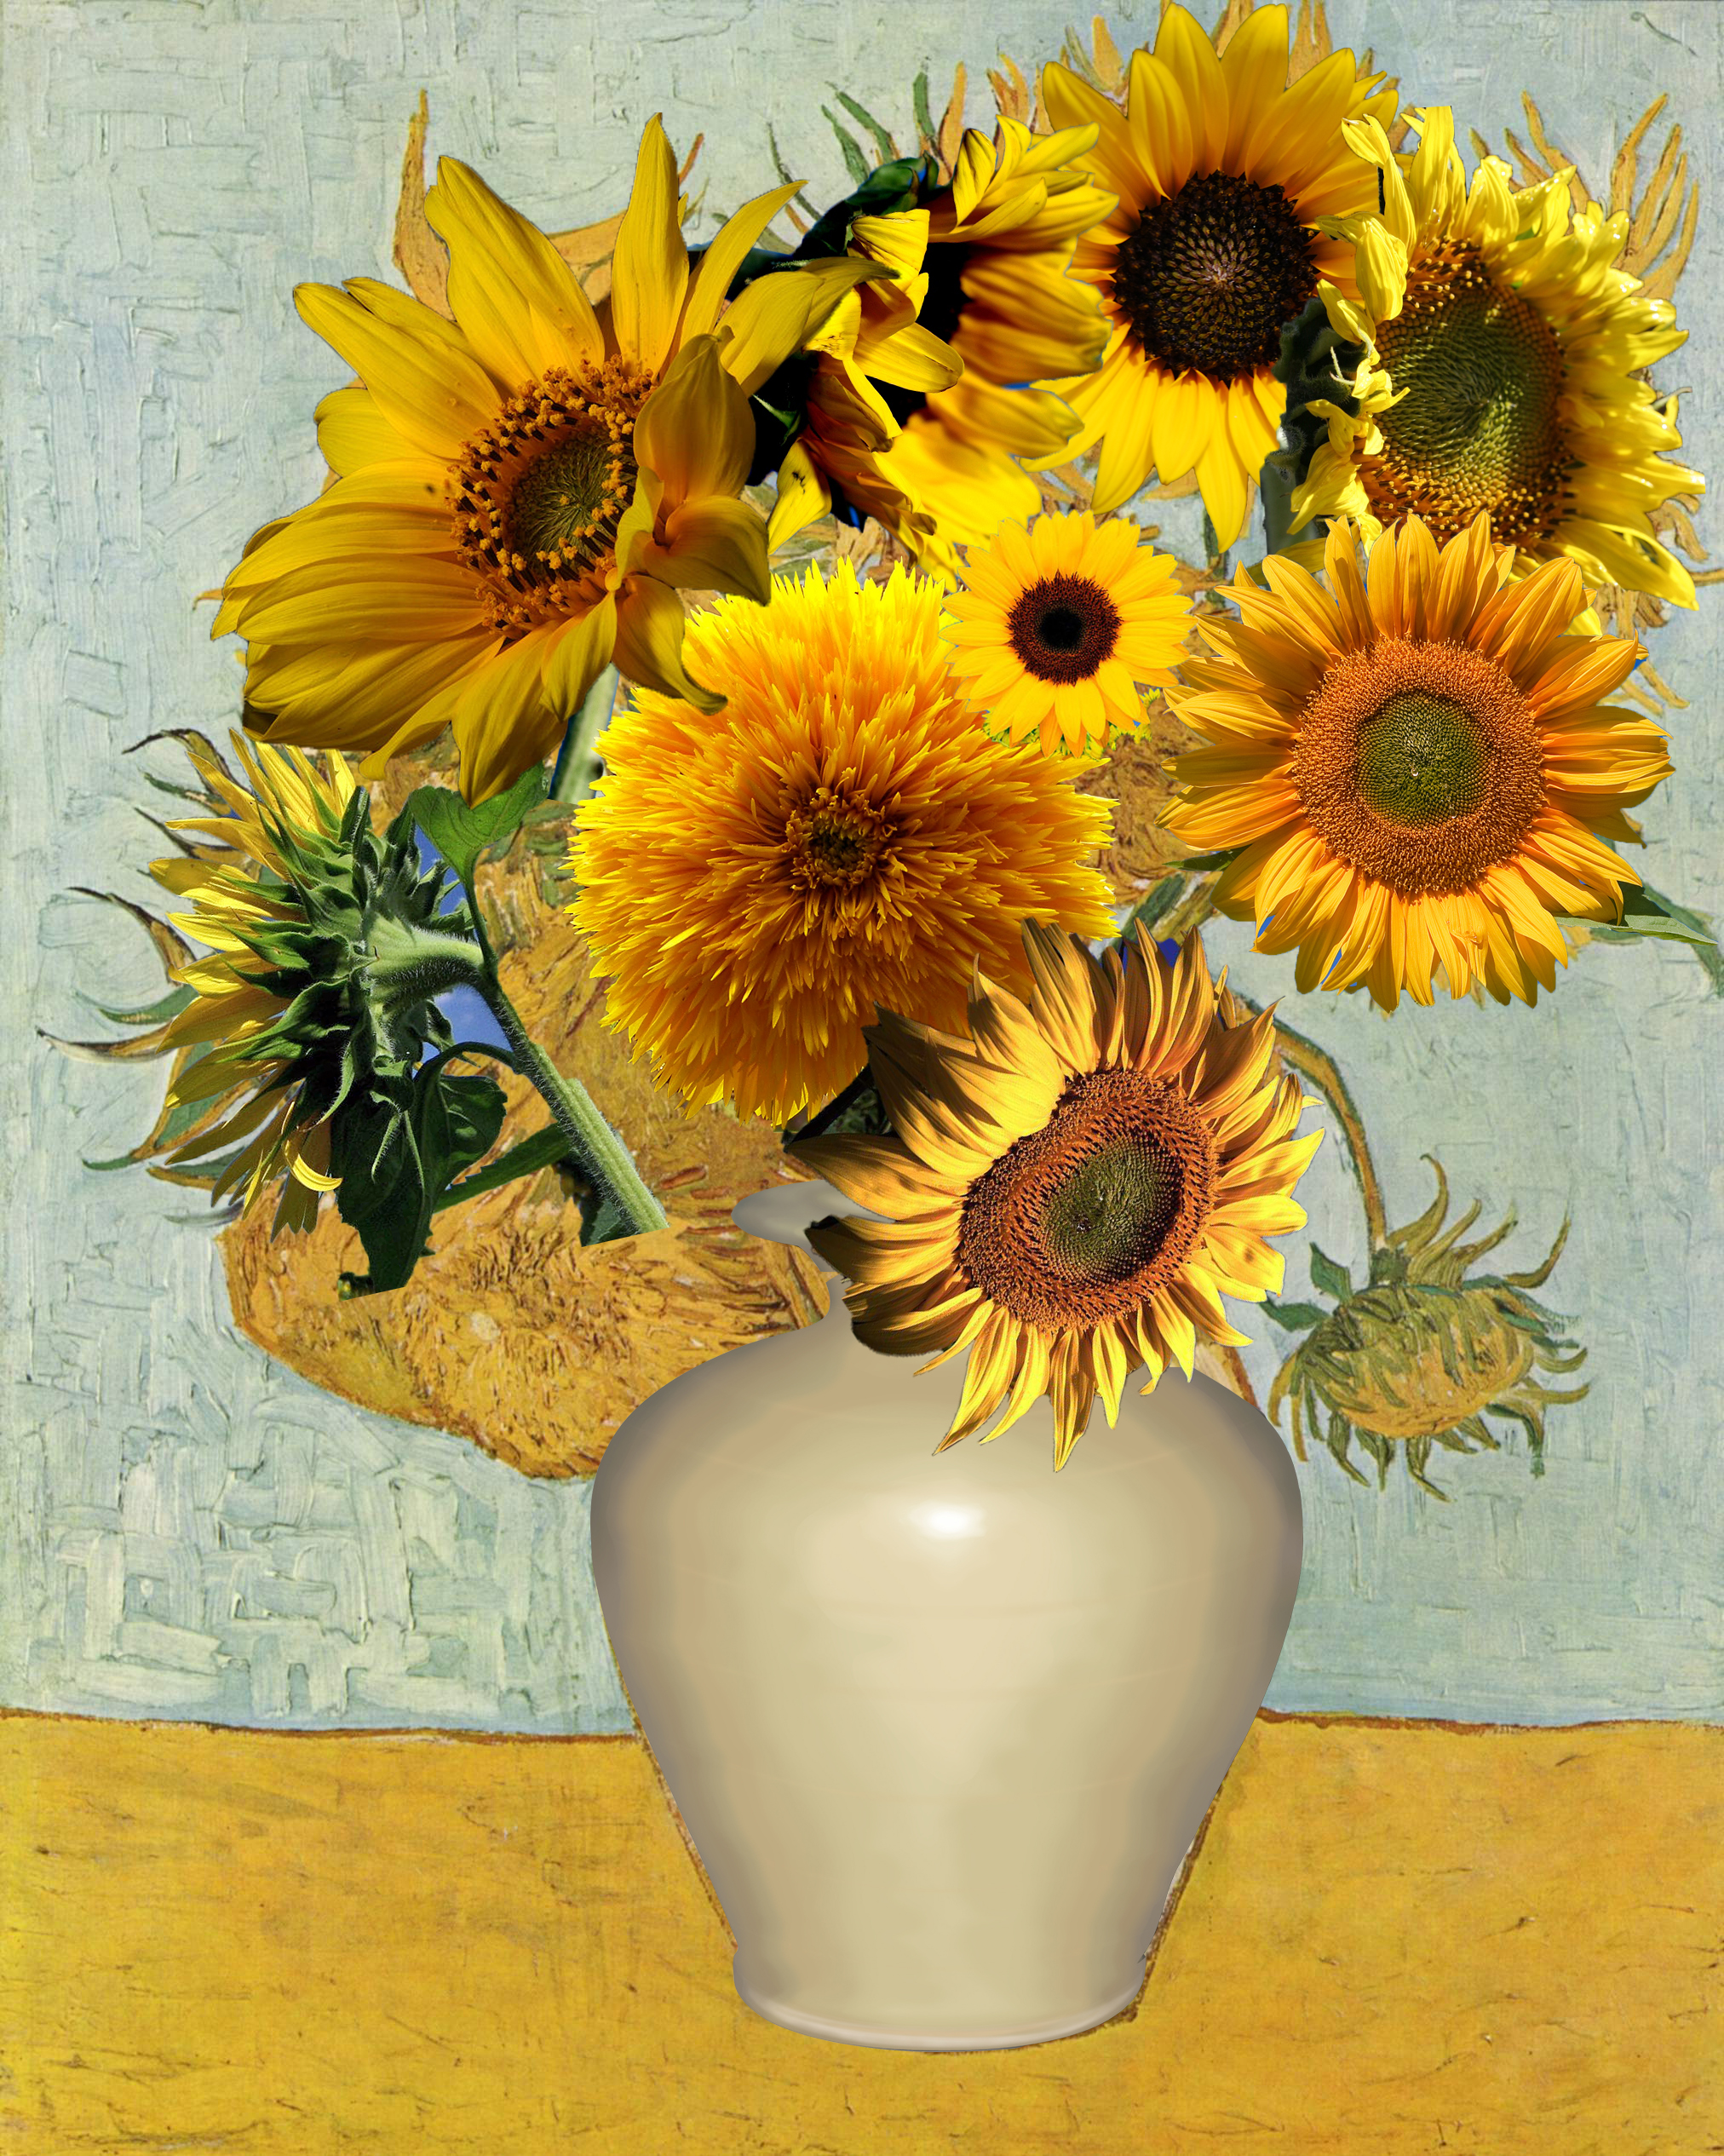 Van Gogh Sunflowers Wallpaper - WallpaperSafari